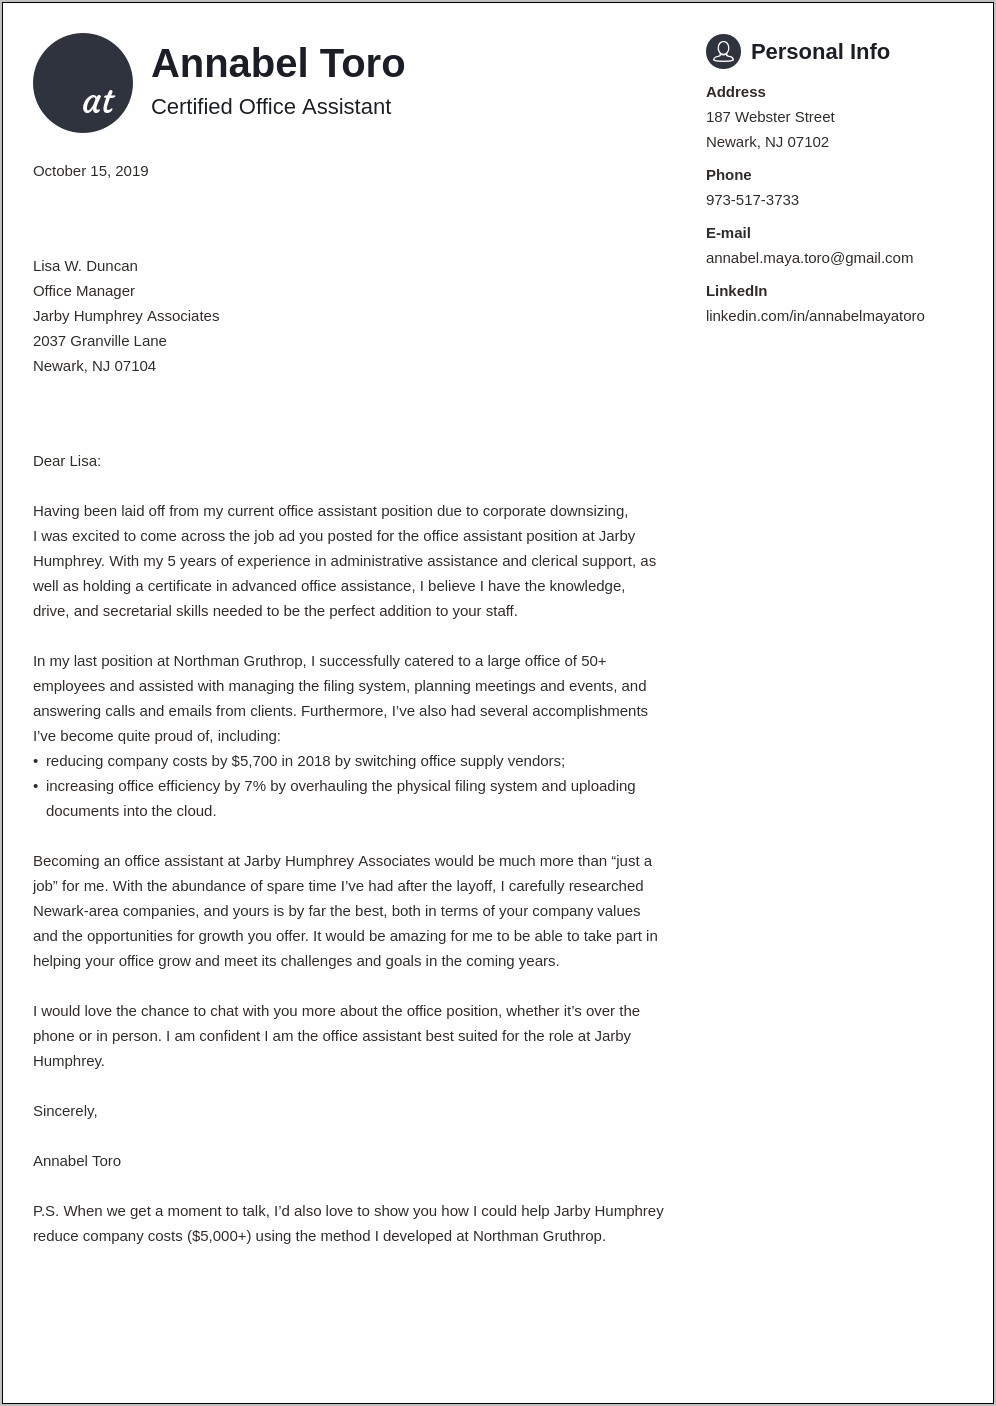 Sample Of An Employer Resume Response Letter